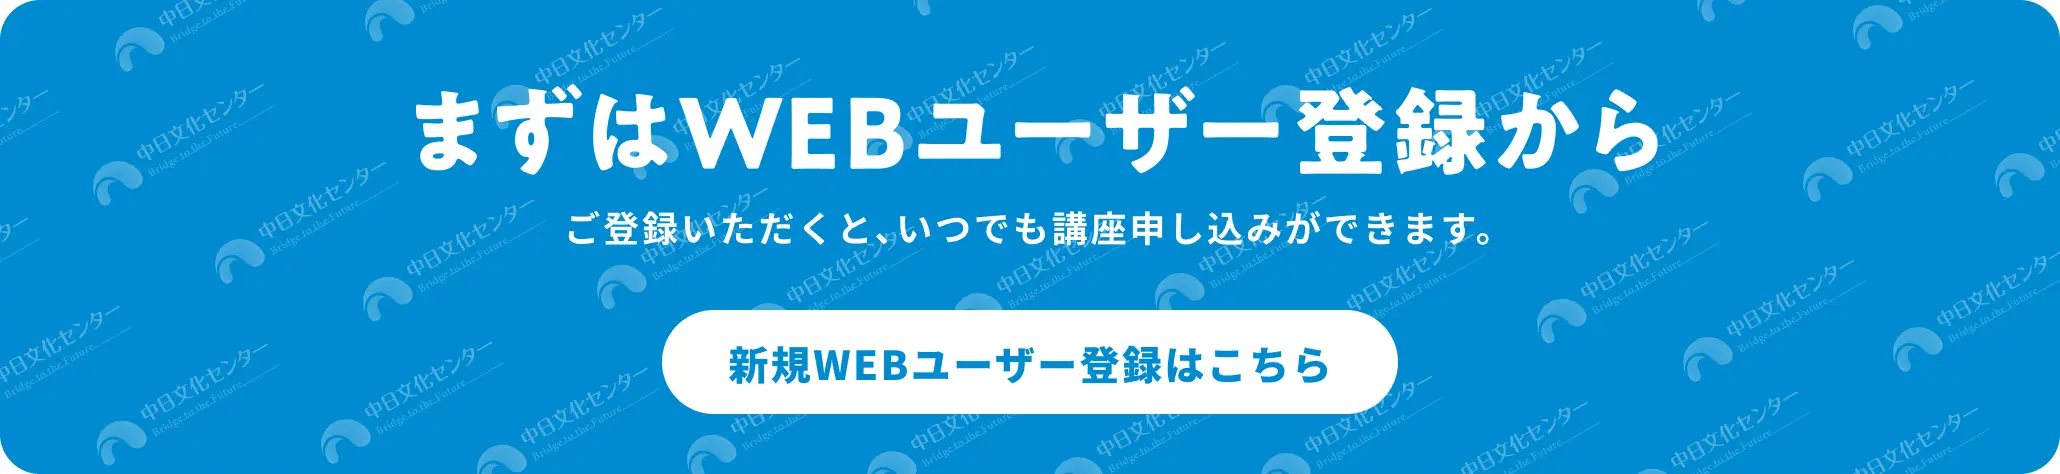 まずはWEBユーザ登録から「新規WEB利用ご登録」